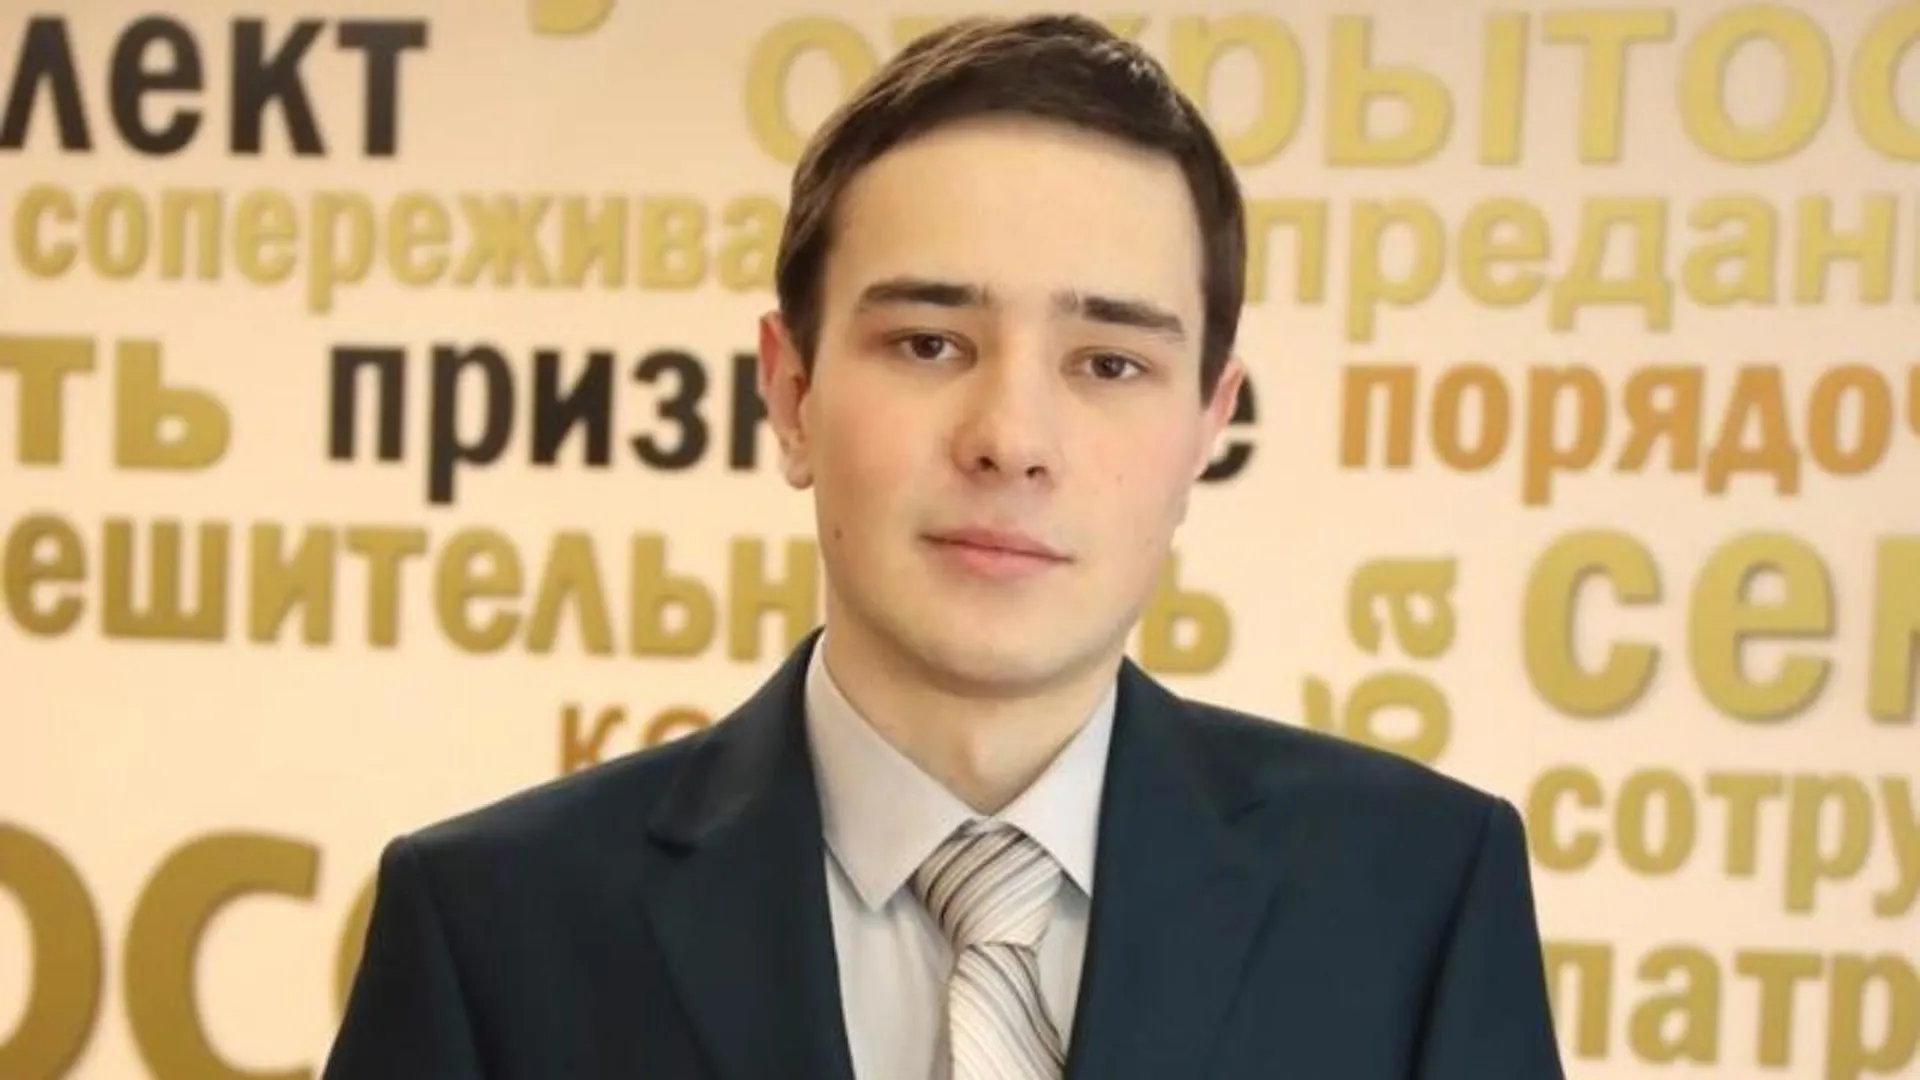 Студент из Коломны успешно показал себя на всероссийской олимпиаде по истории предпринимательства